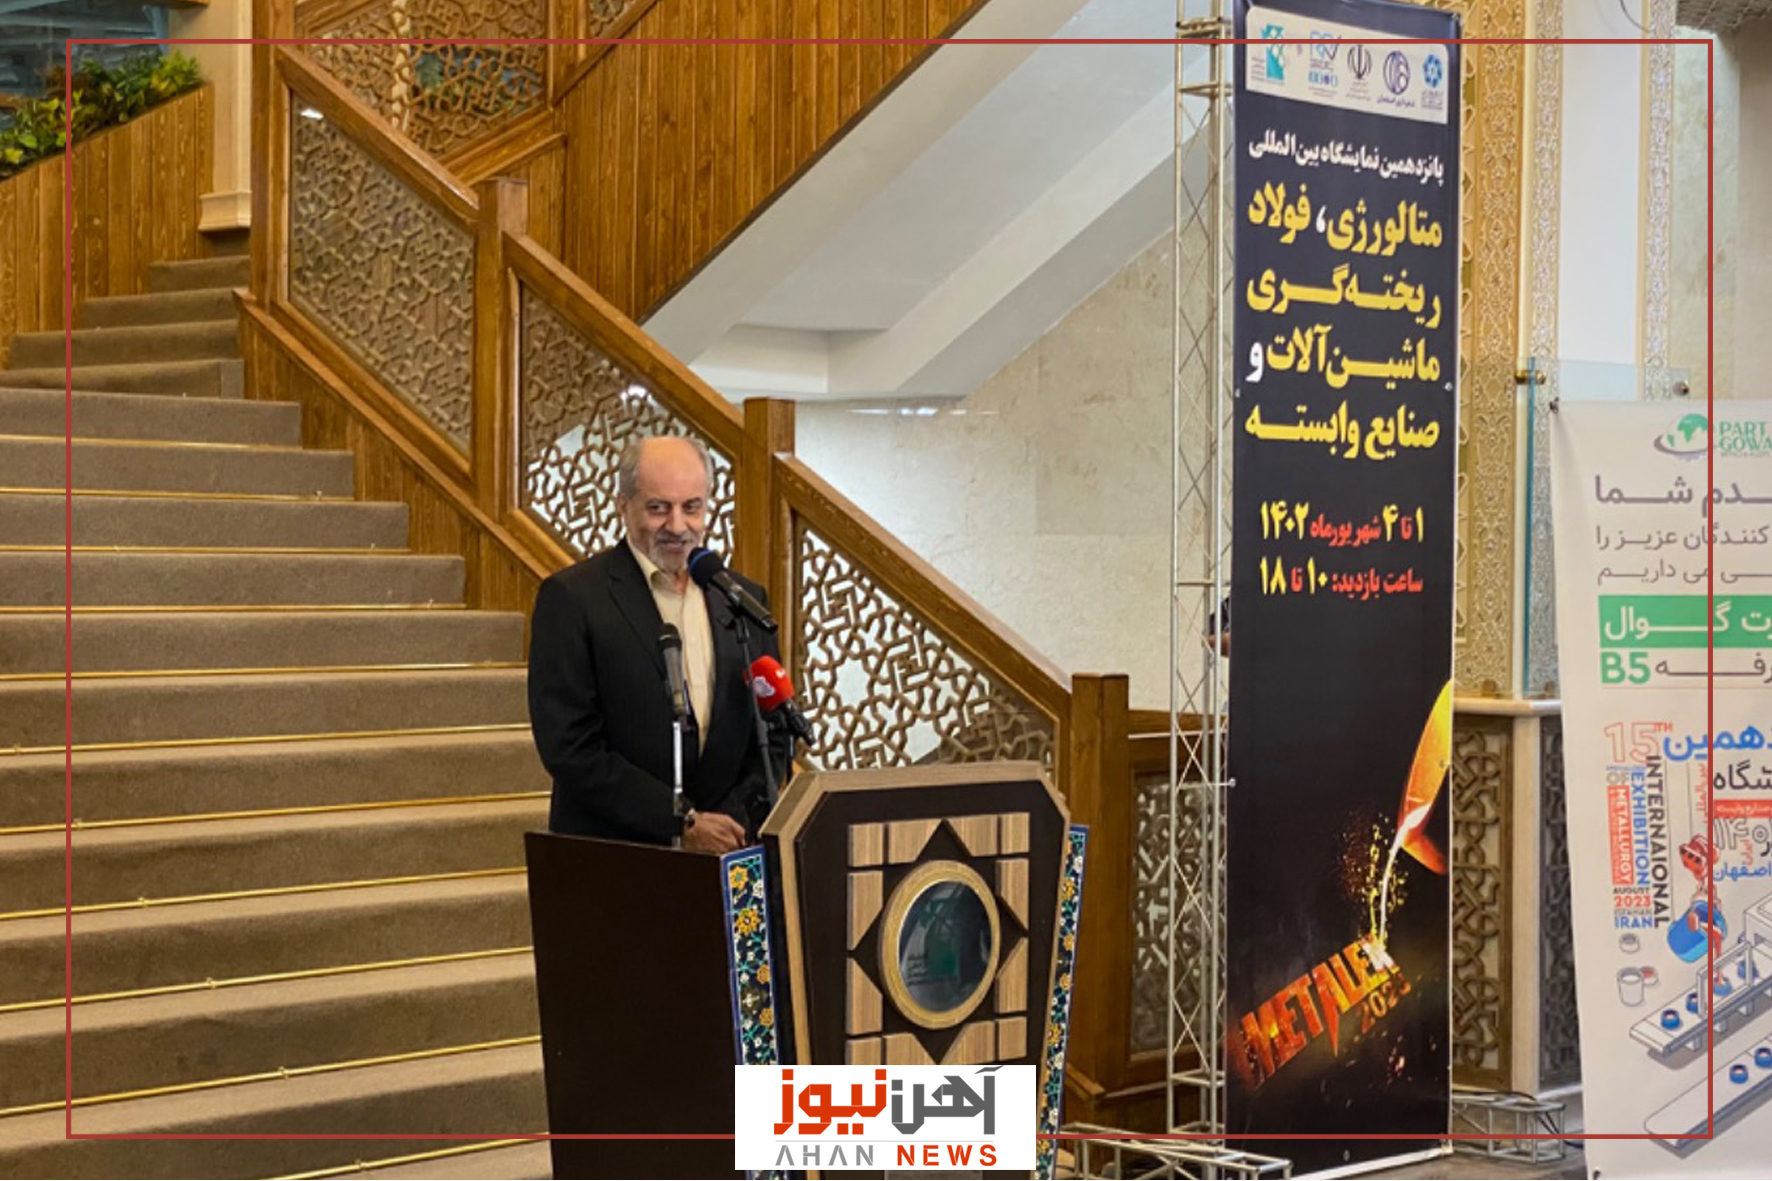 نمایشگاه متالوژی و صنعت فولاد در اصفهان افتتاح شد/ ساختار حکمرانی در زنجیره فولاد وجود ندارد